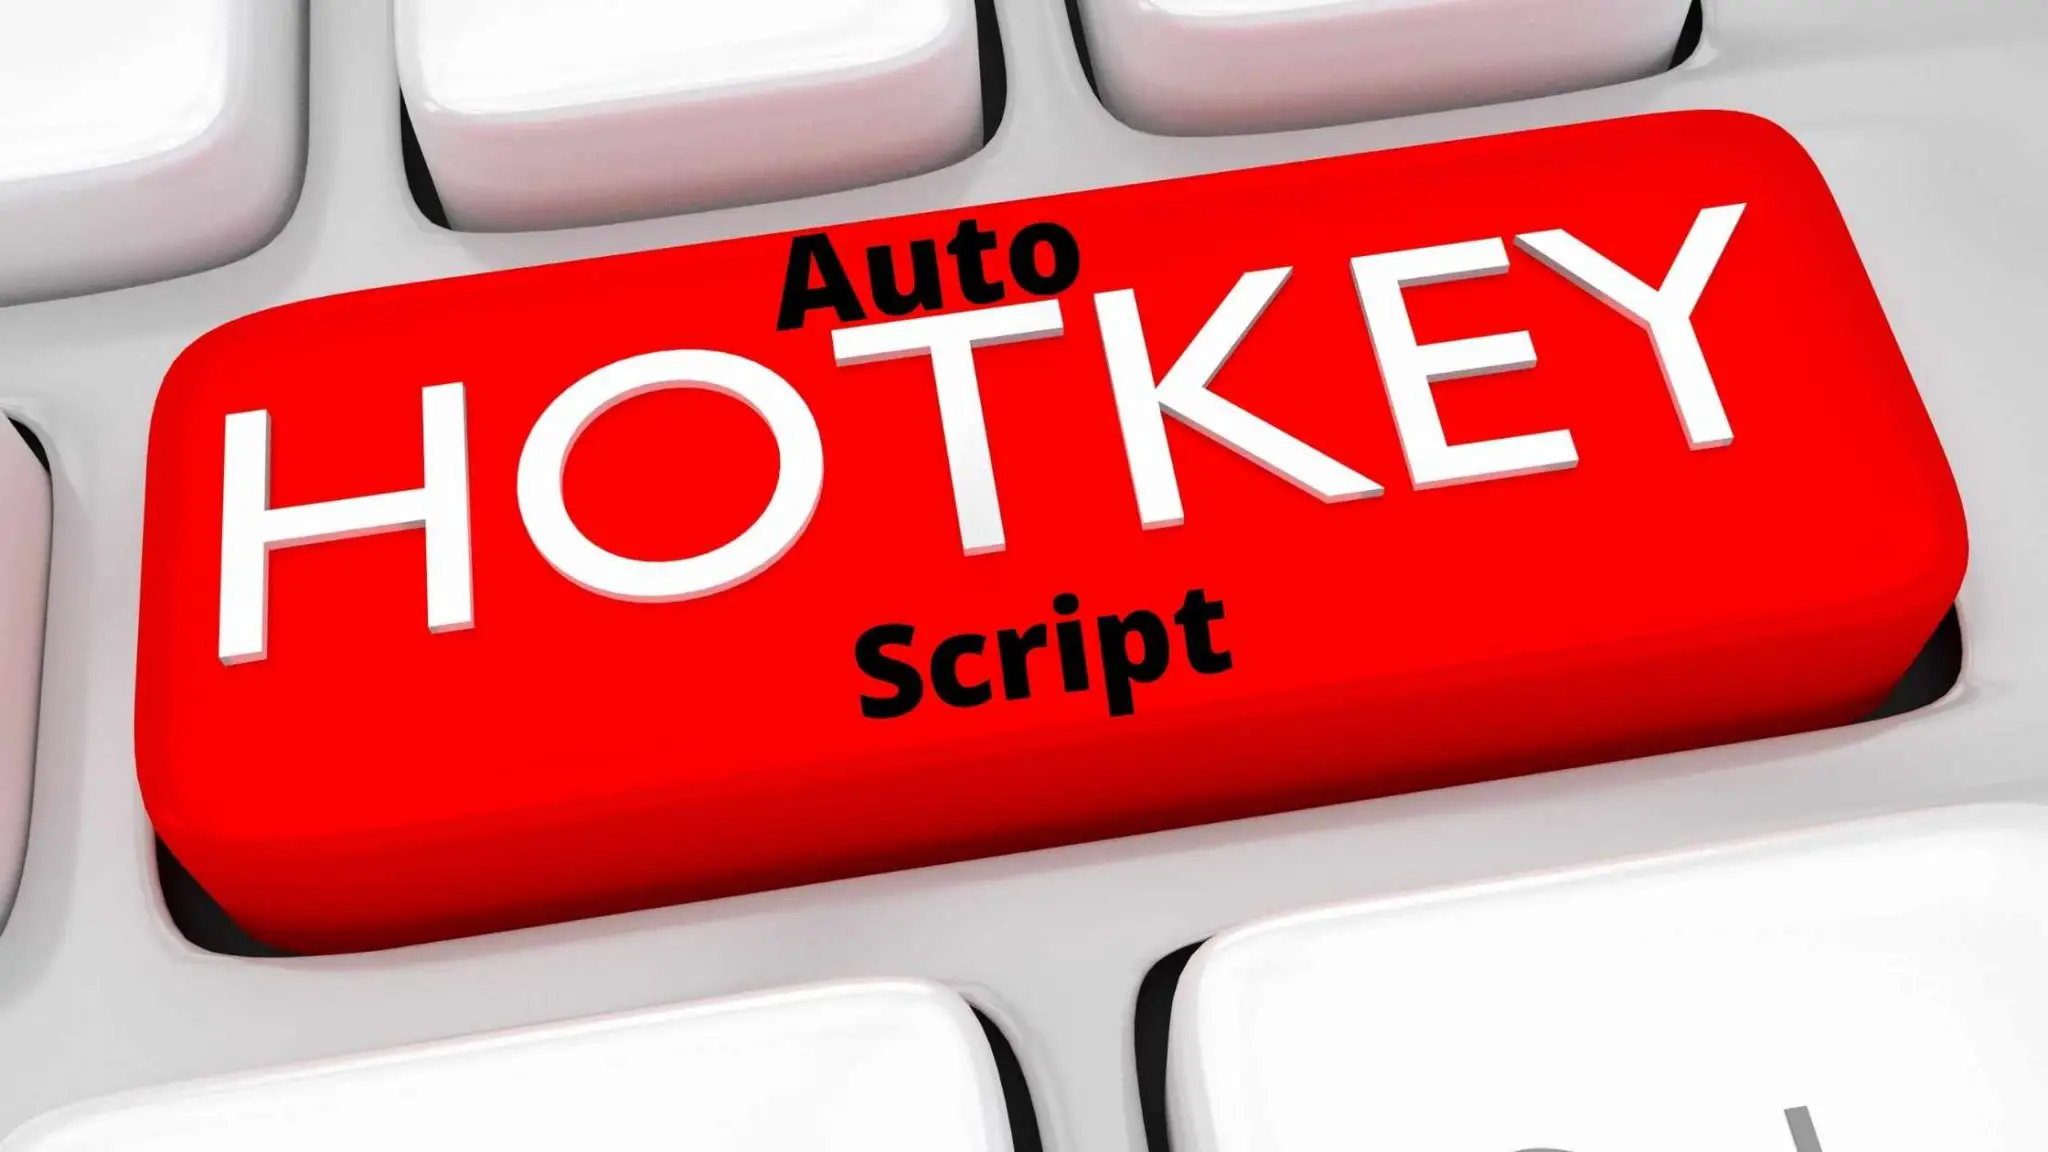 autohotkey script writing